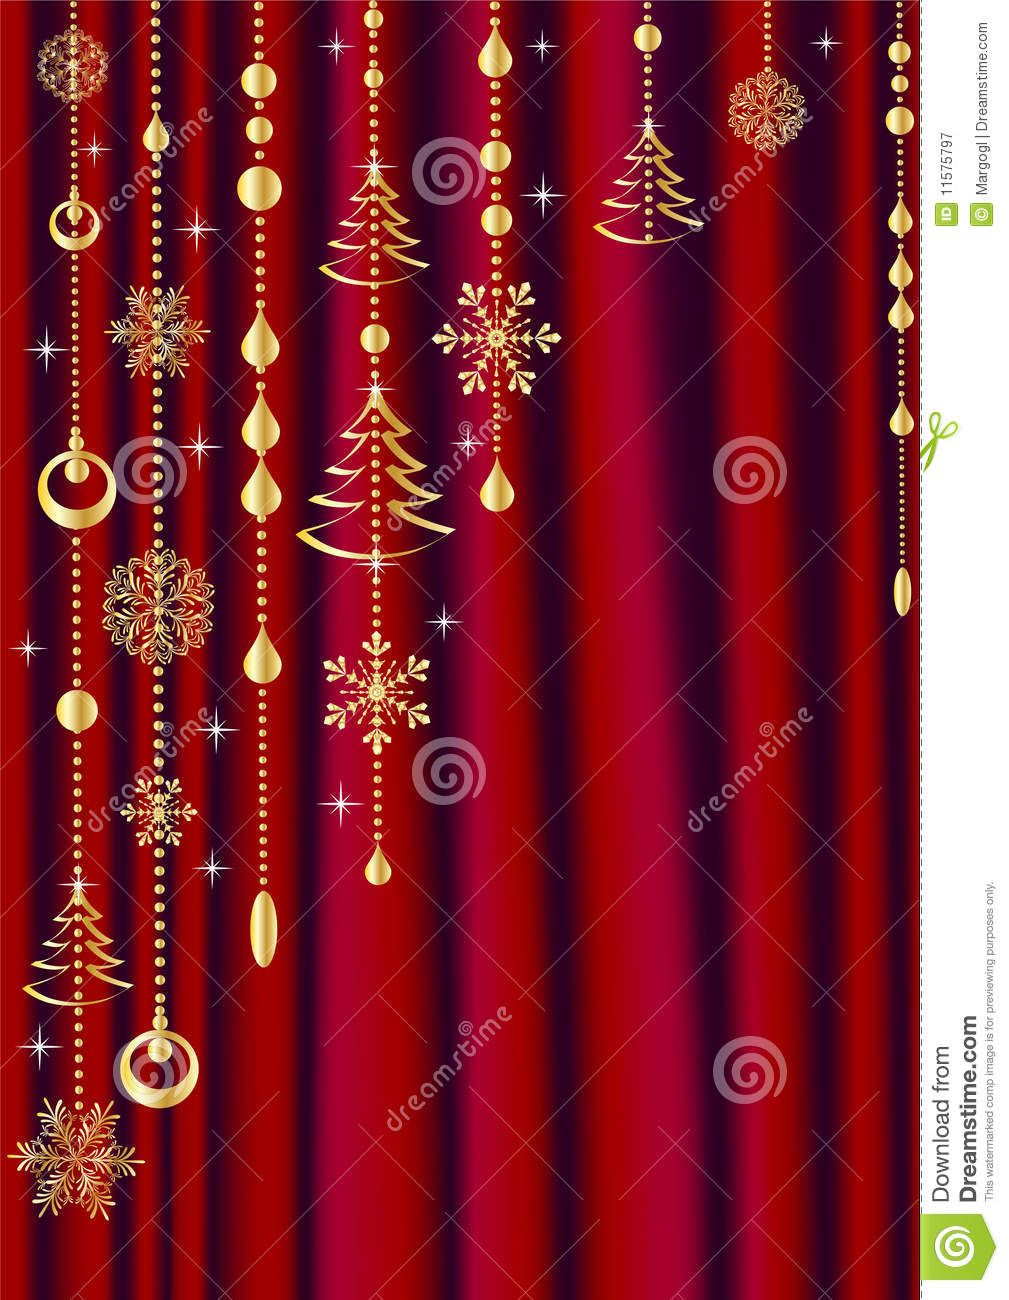 Rideau Rouge Avec La Décoration De Noël. Illustration De destiné Rideau En Organza Lumineux